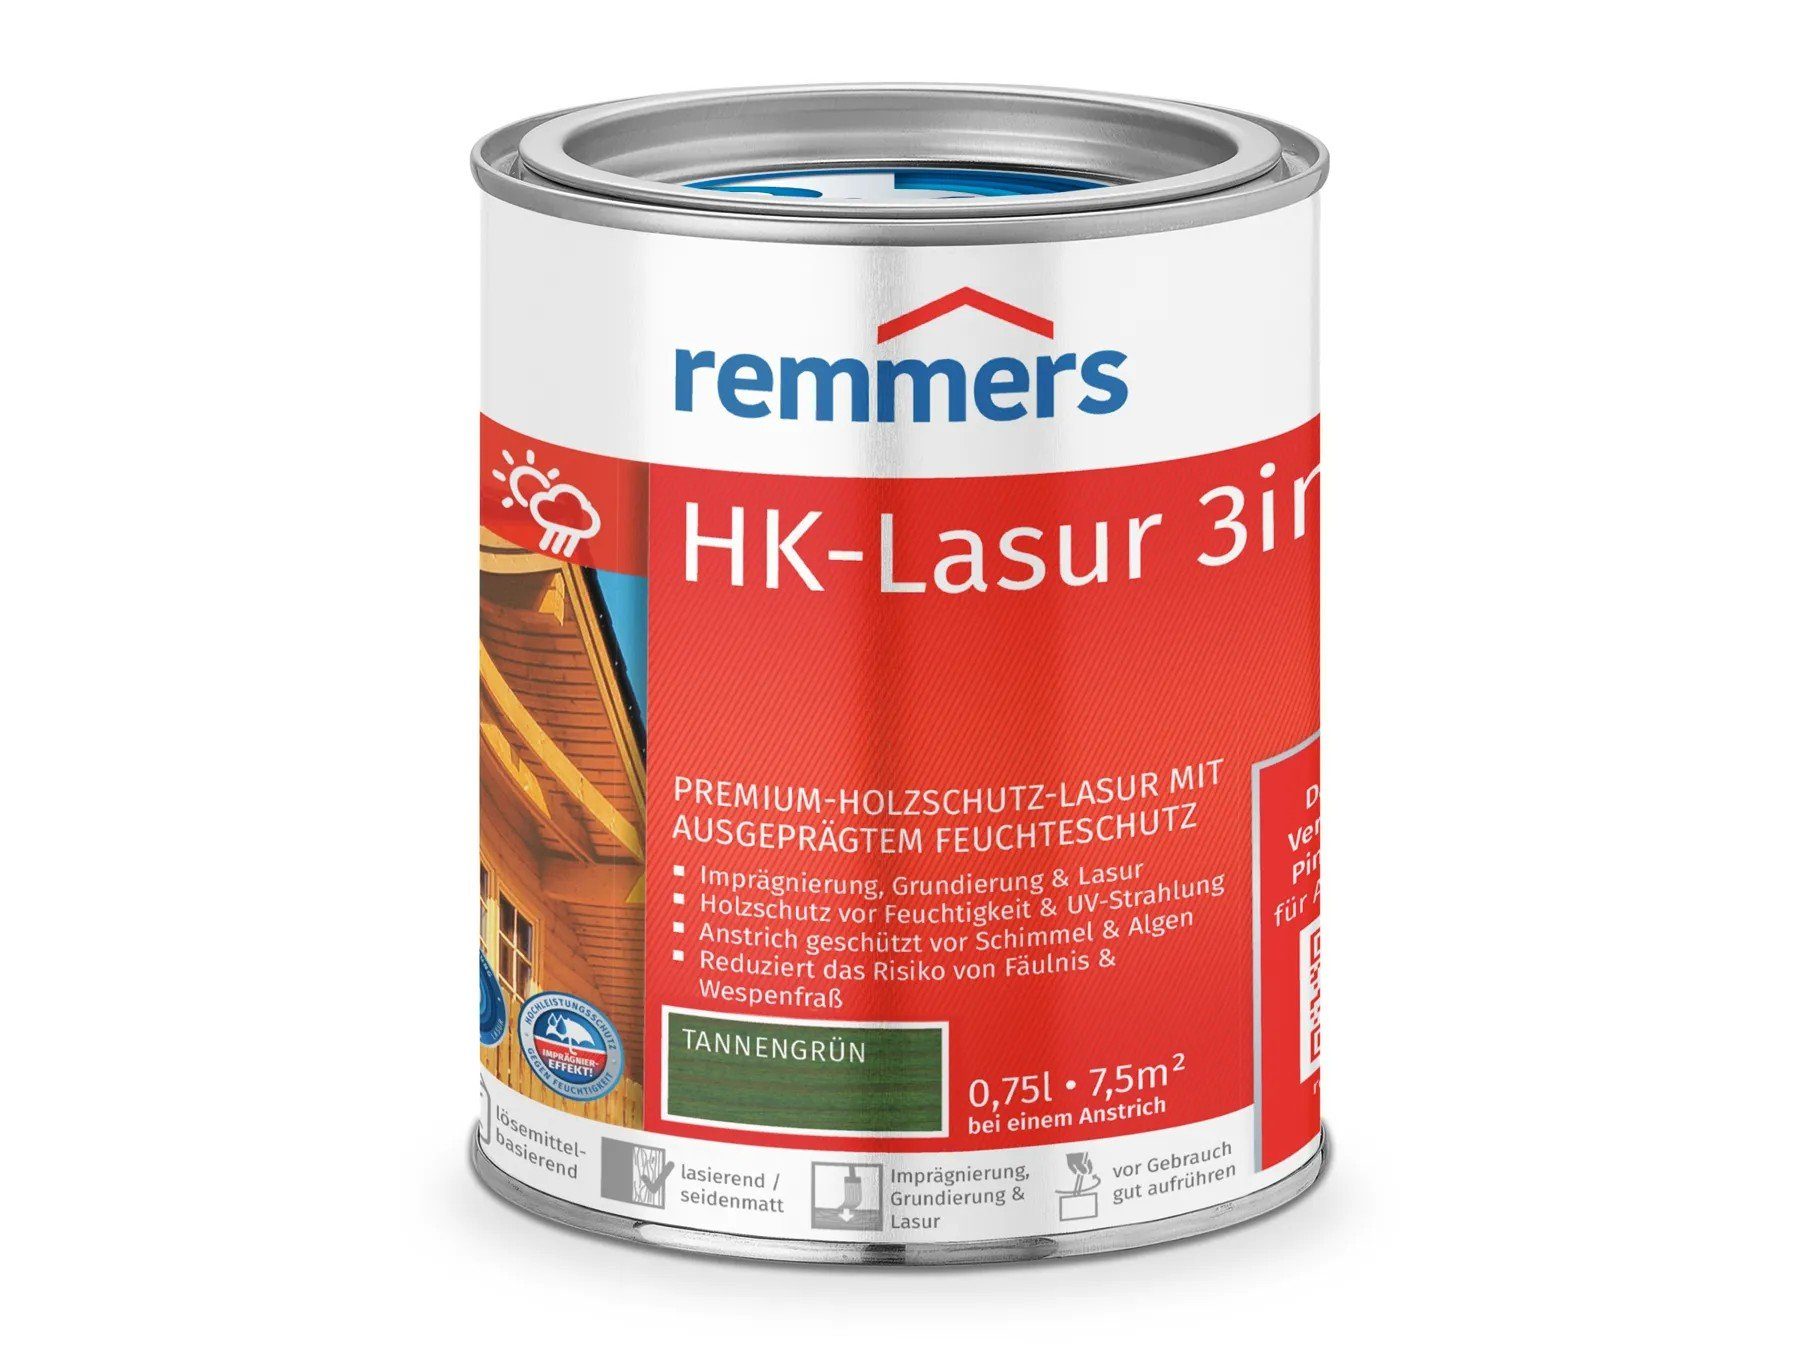 Holzschutzlasur tannengrün (RC-960) 3in1 Remmers HK-Lasur